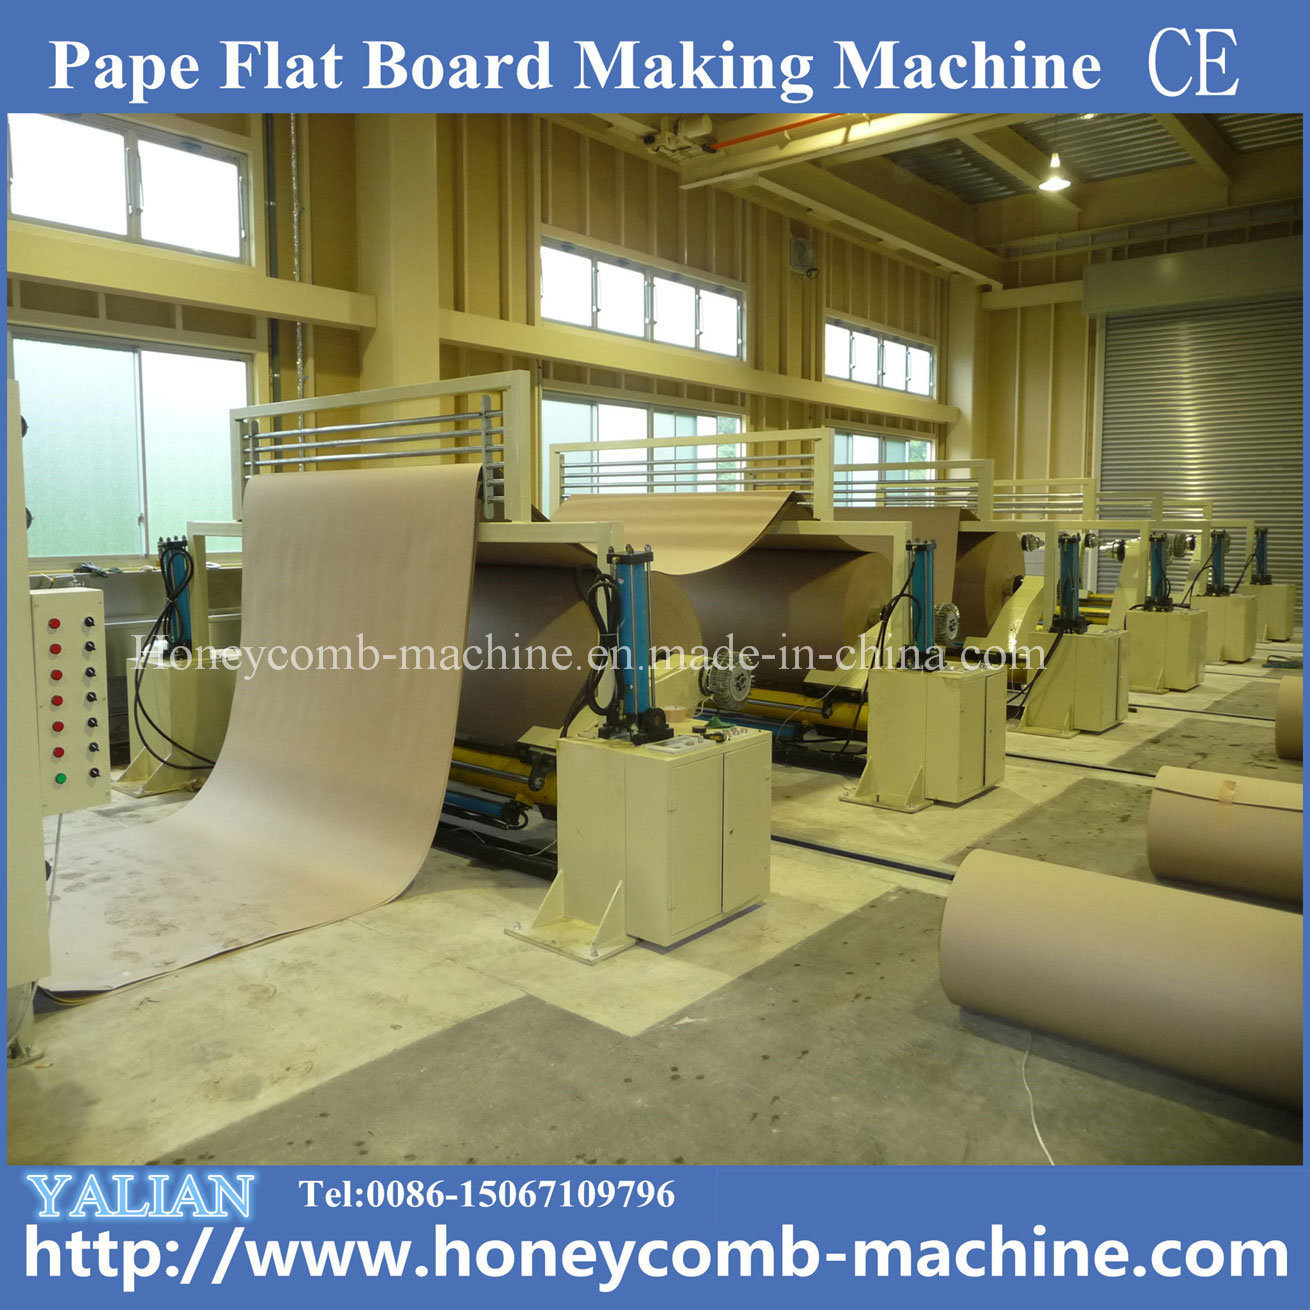 2014 Popular High Quality Paper Flat Board Lamination Making Machine Paper Board Machine